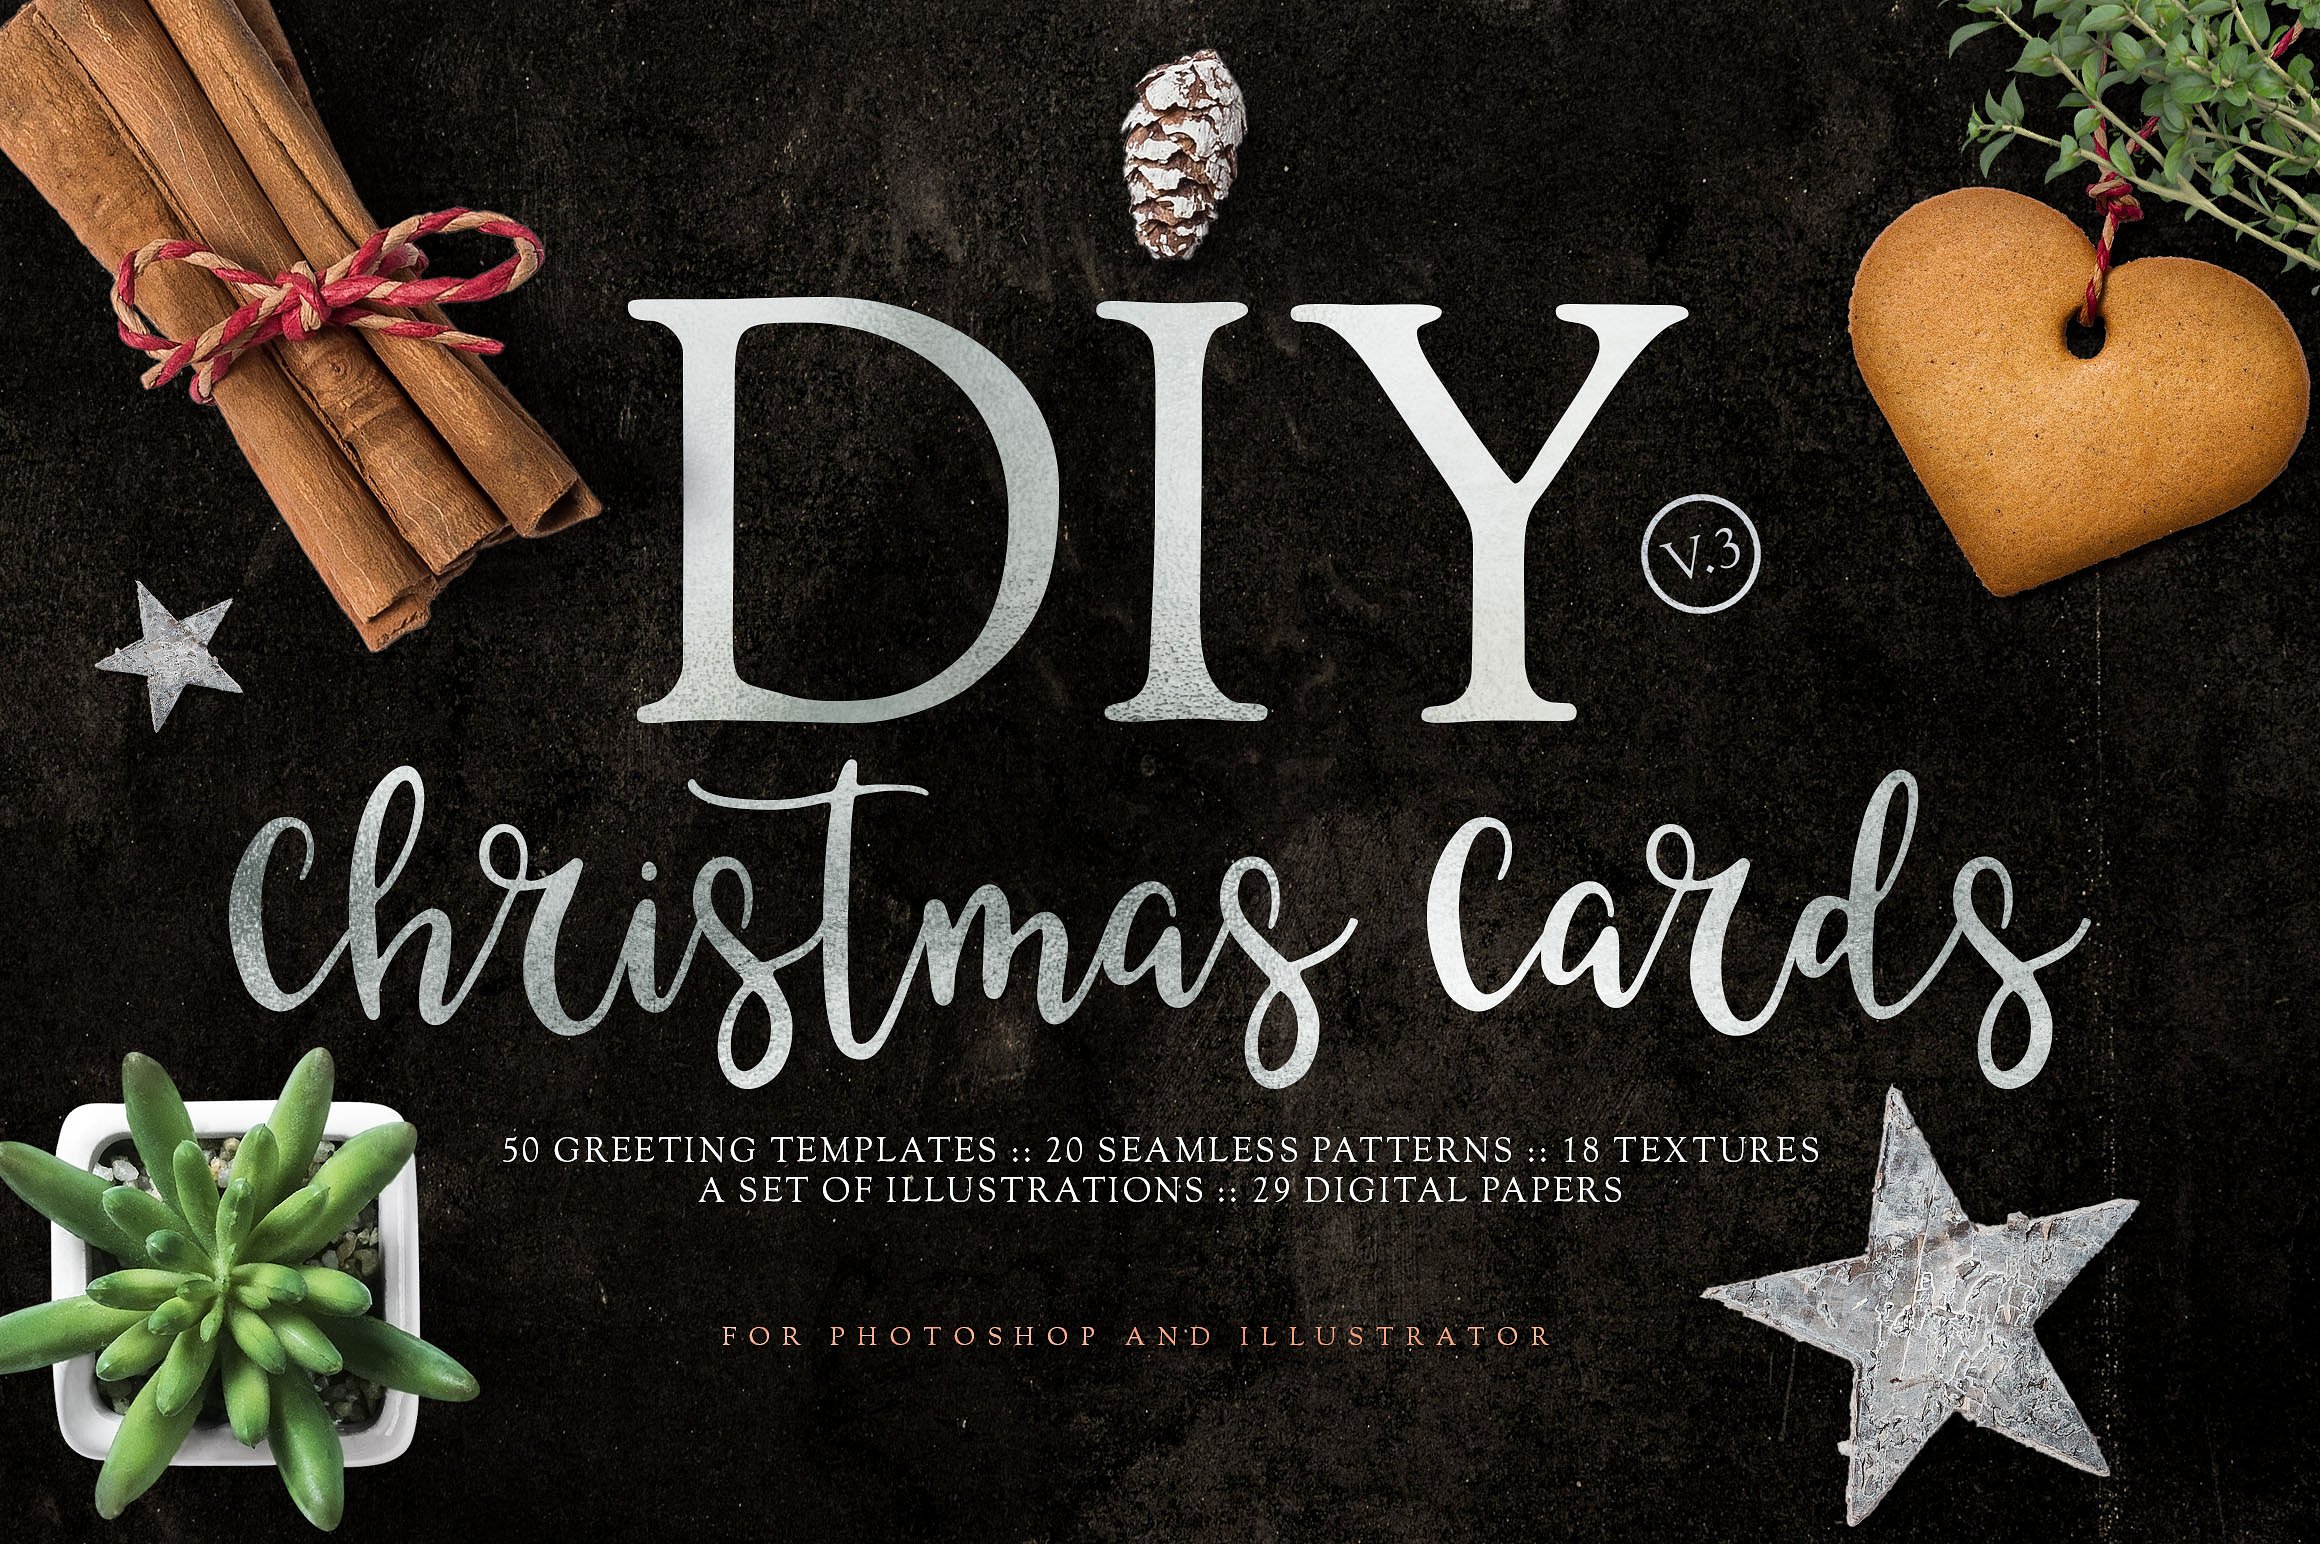 圣诞节贺卡DIY设计素材包v3 DIY Christmas Cards v3插图